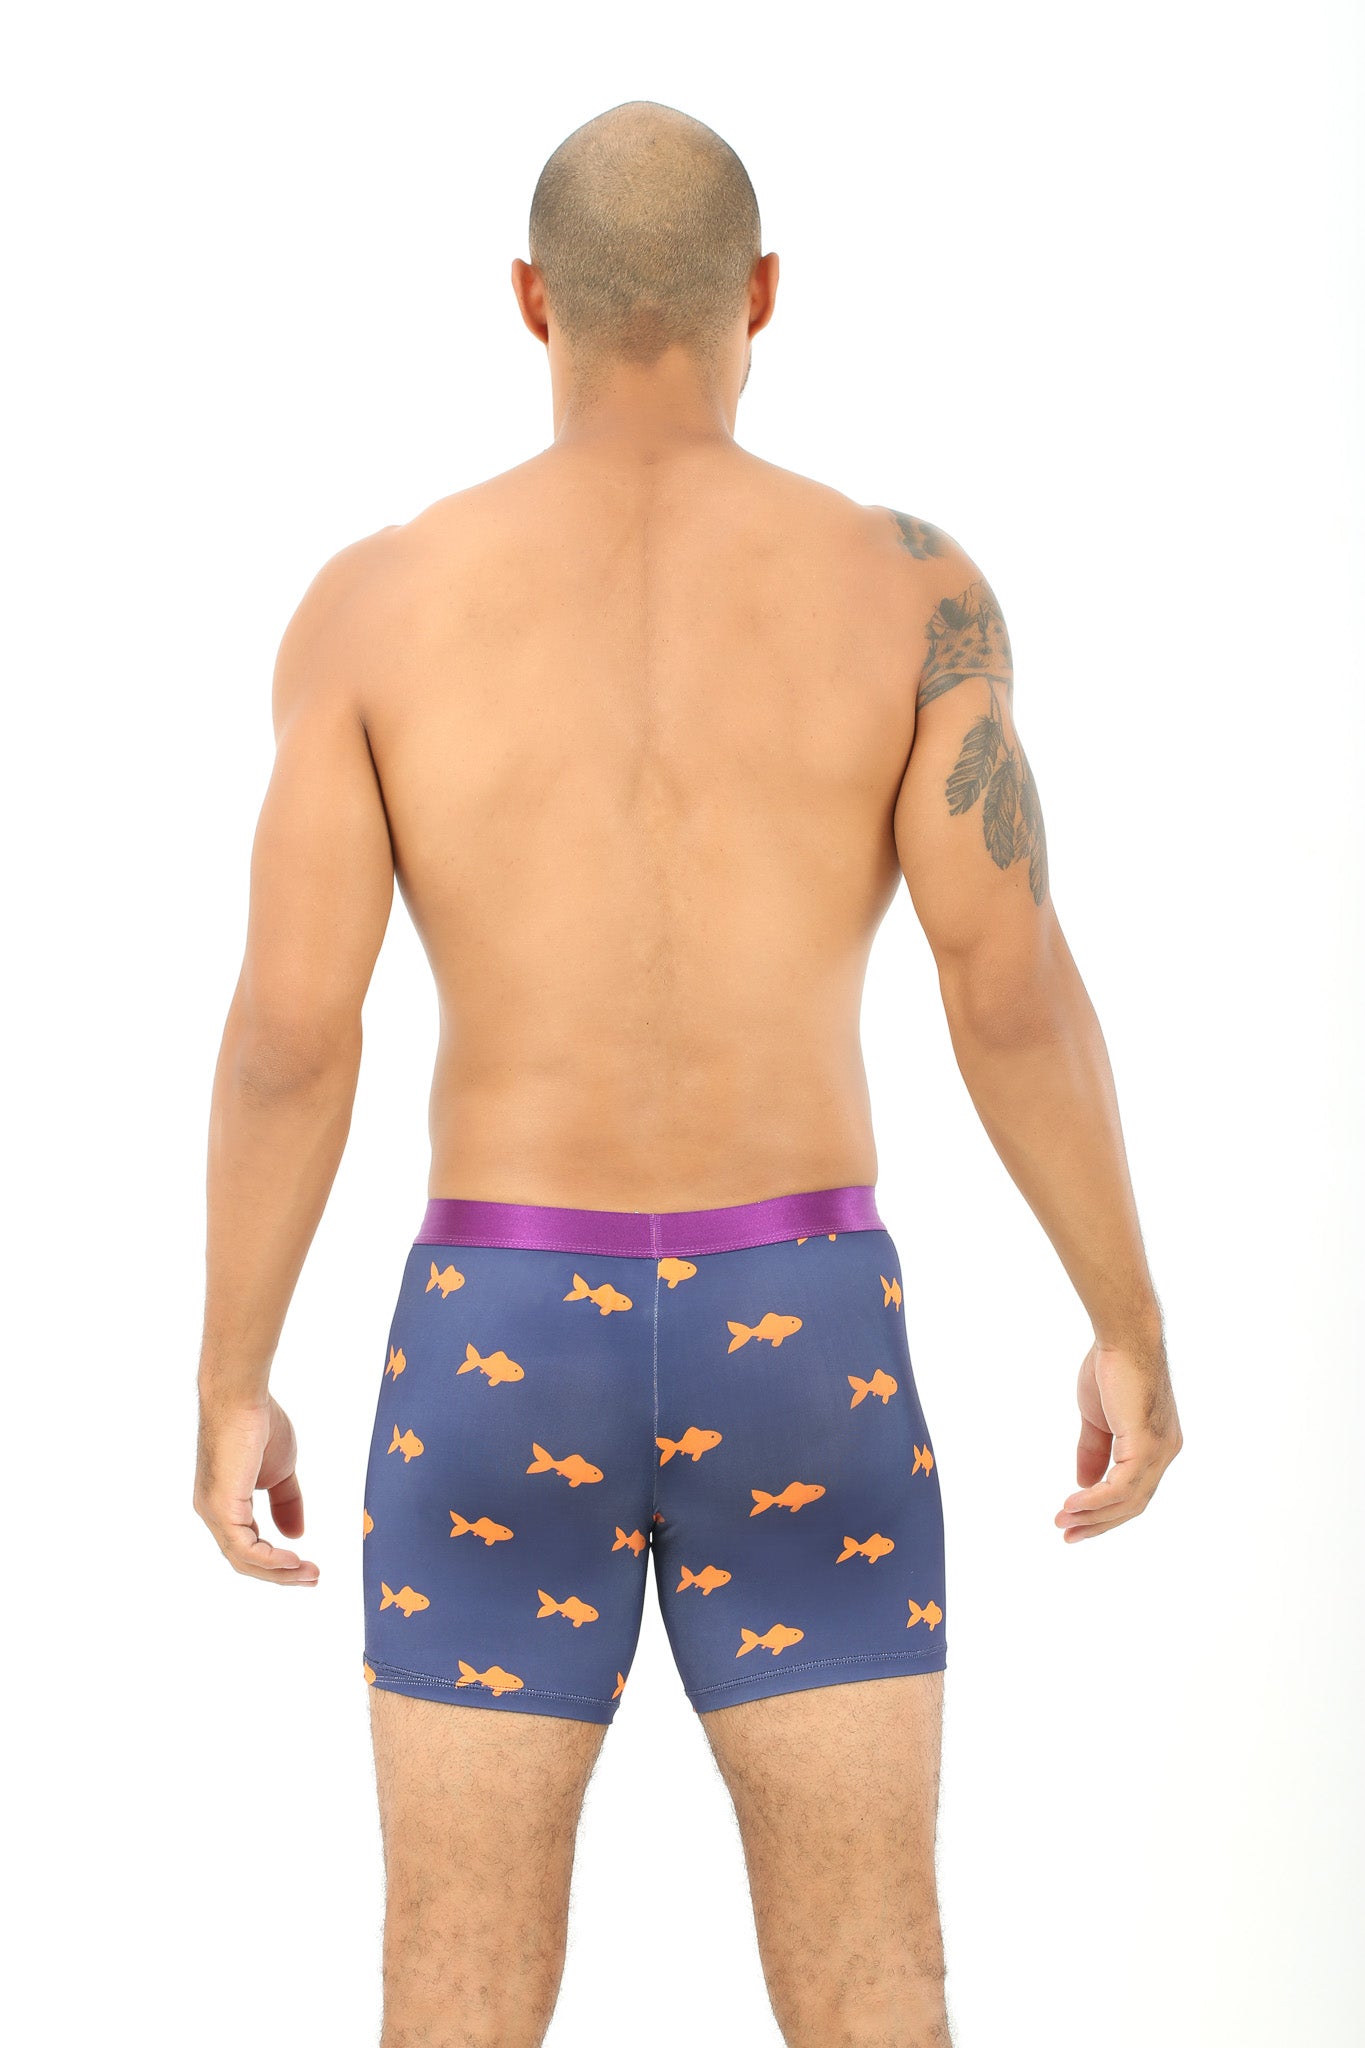 Goldfish Underwear